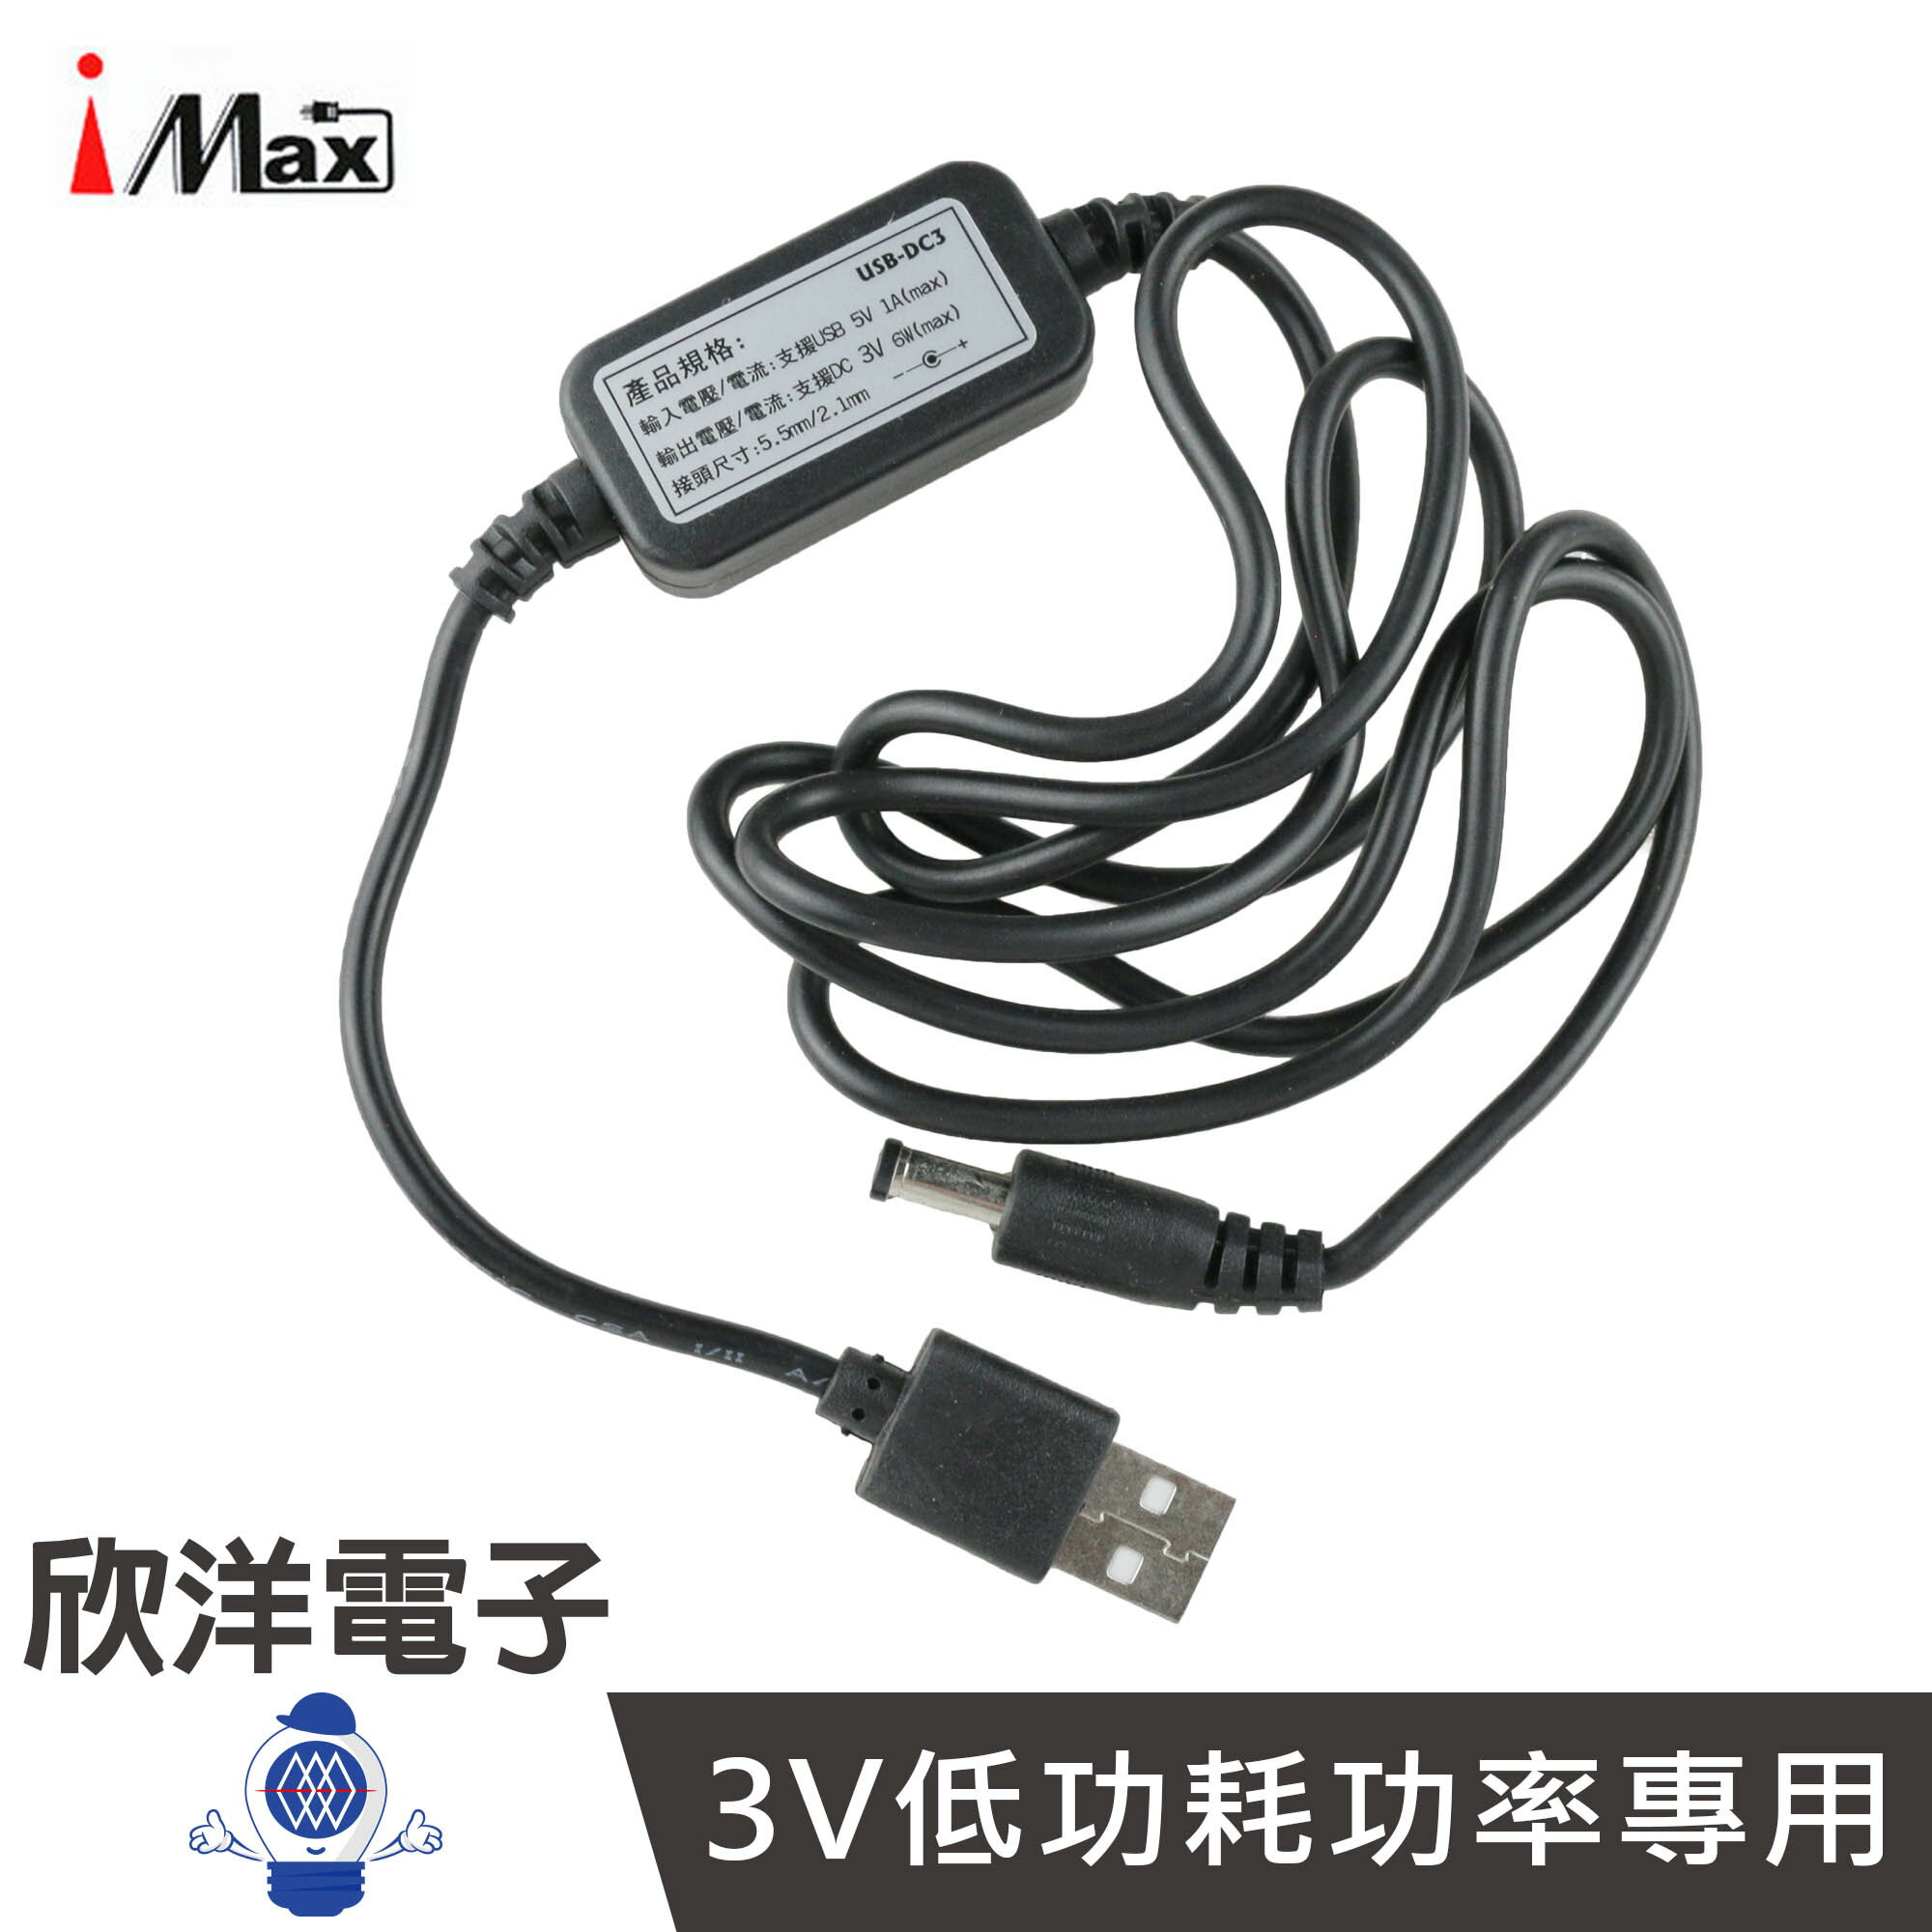 ※ 欣洋電子 ※ iMax USB 5V轉DC 3V降壓線(USB-DC3) 1公尺/1M/1米/低消耗功率專用